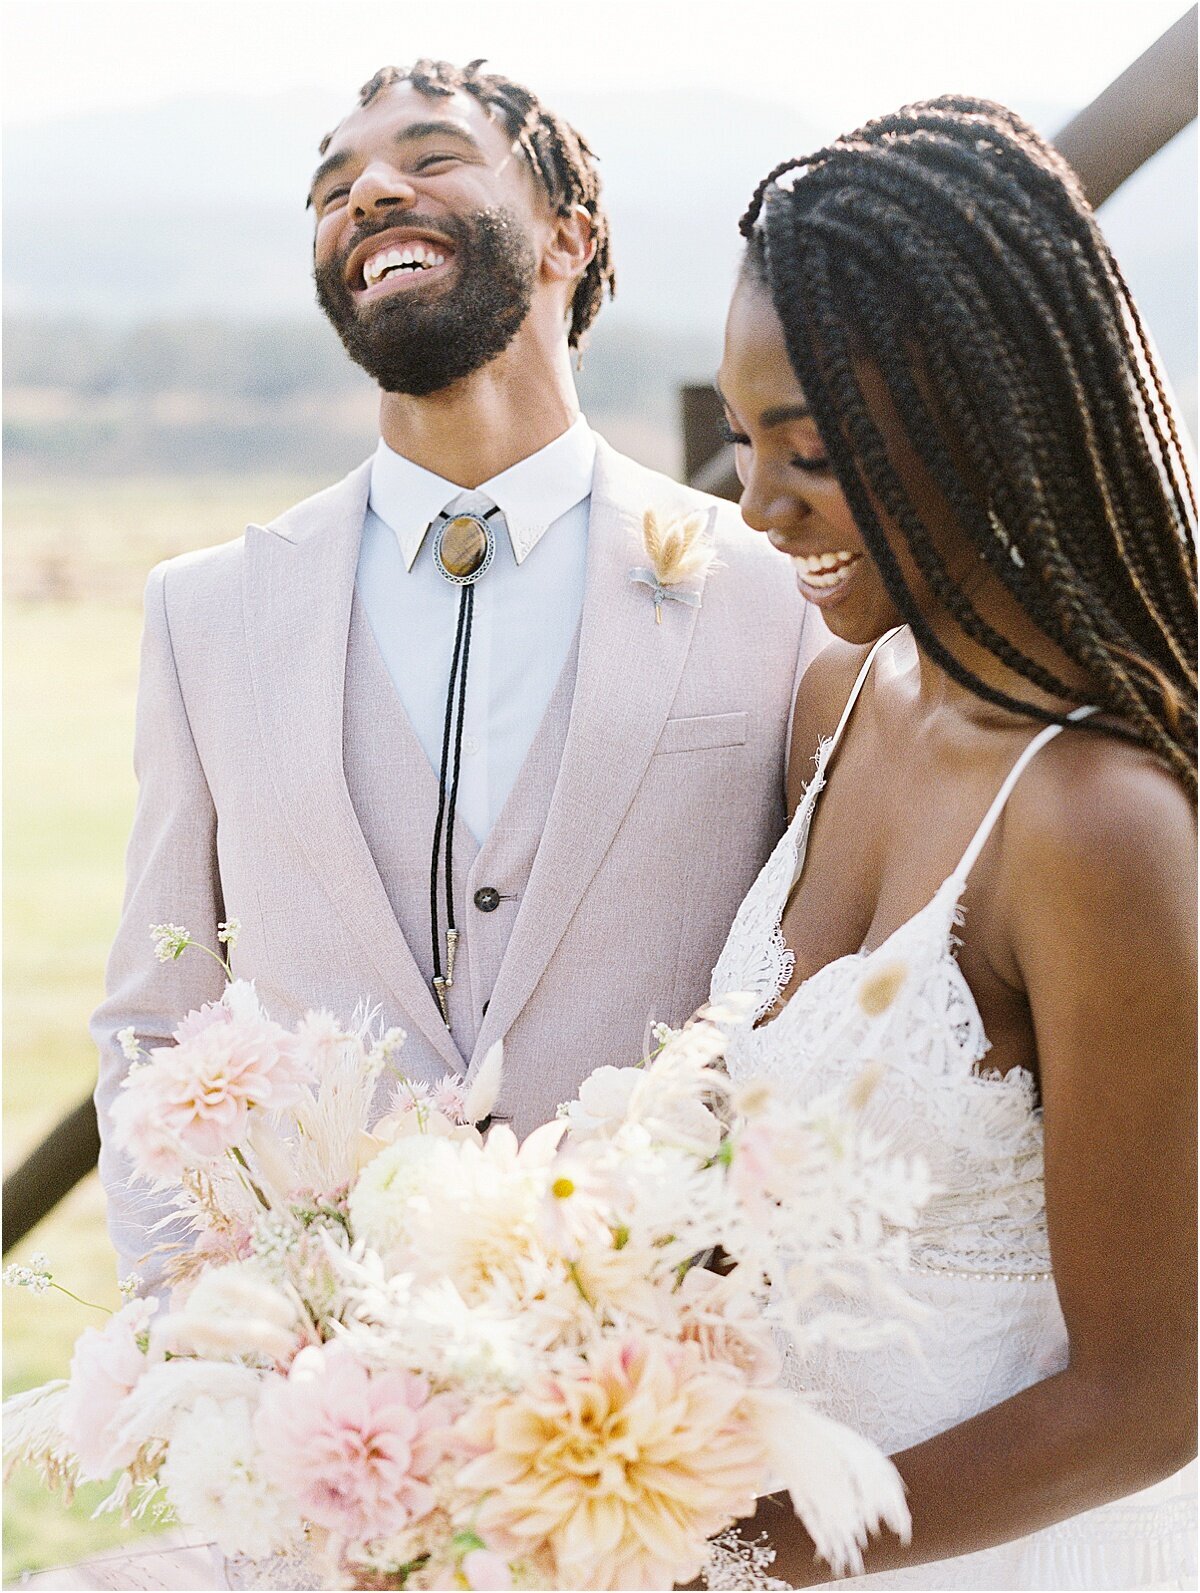 Diverse colorado couple wedding photographer